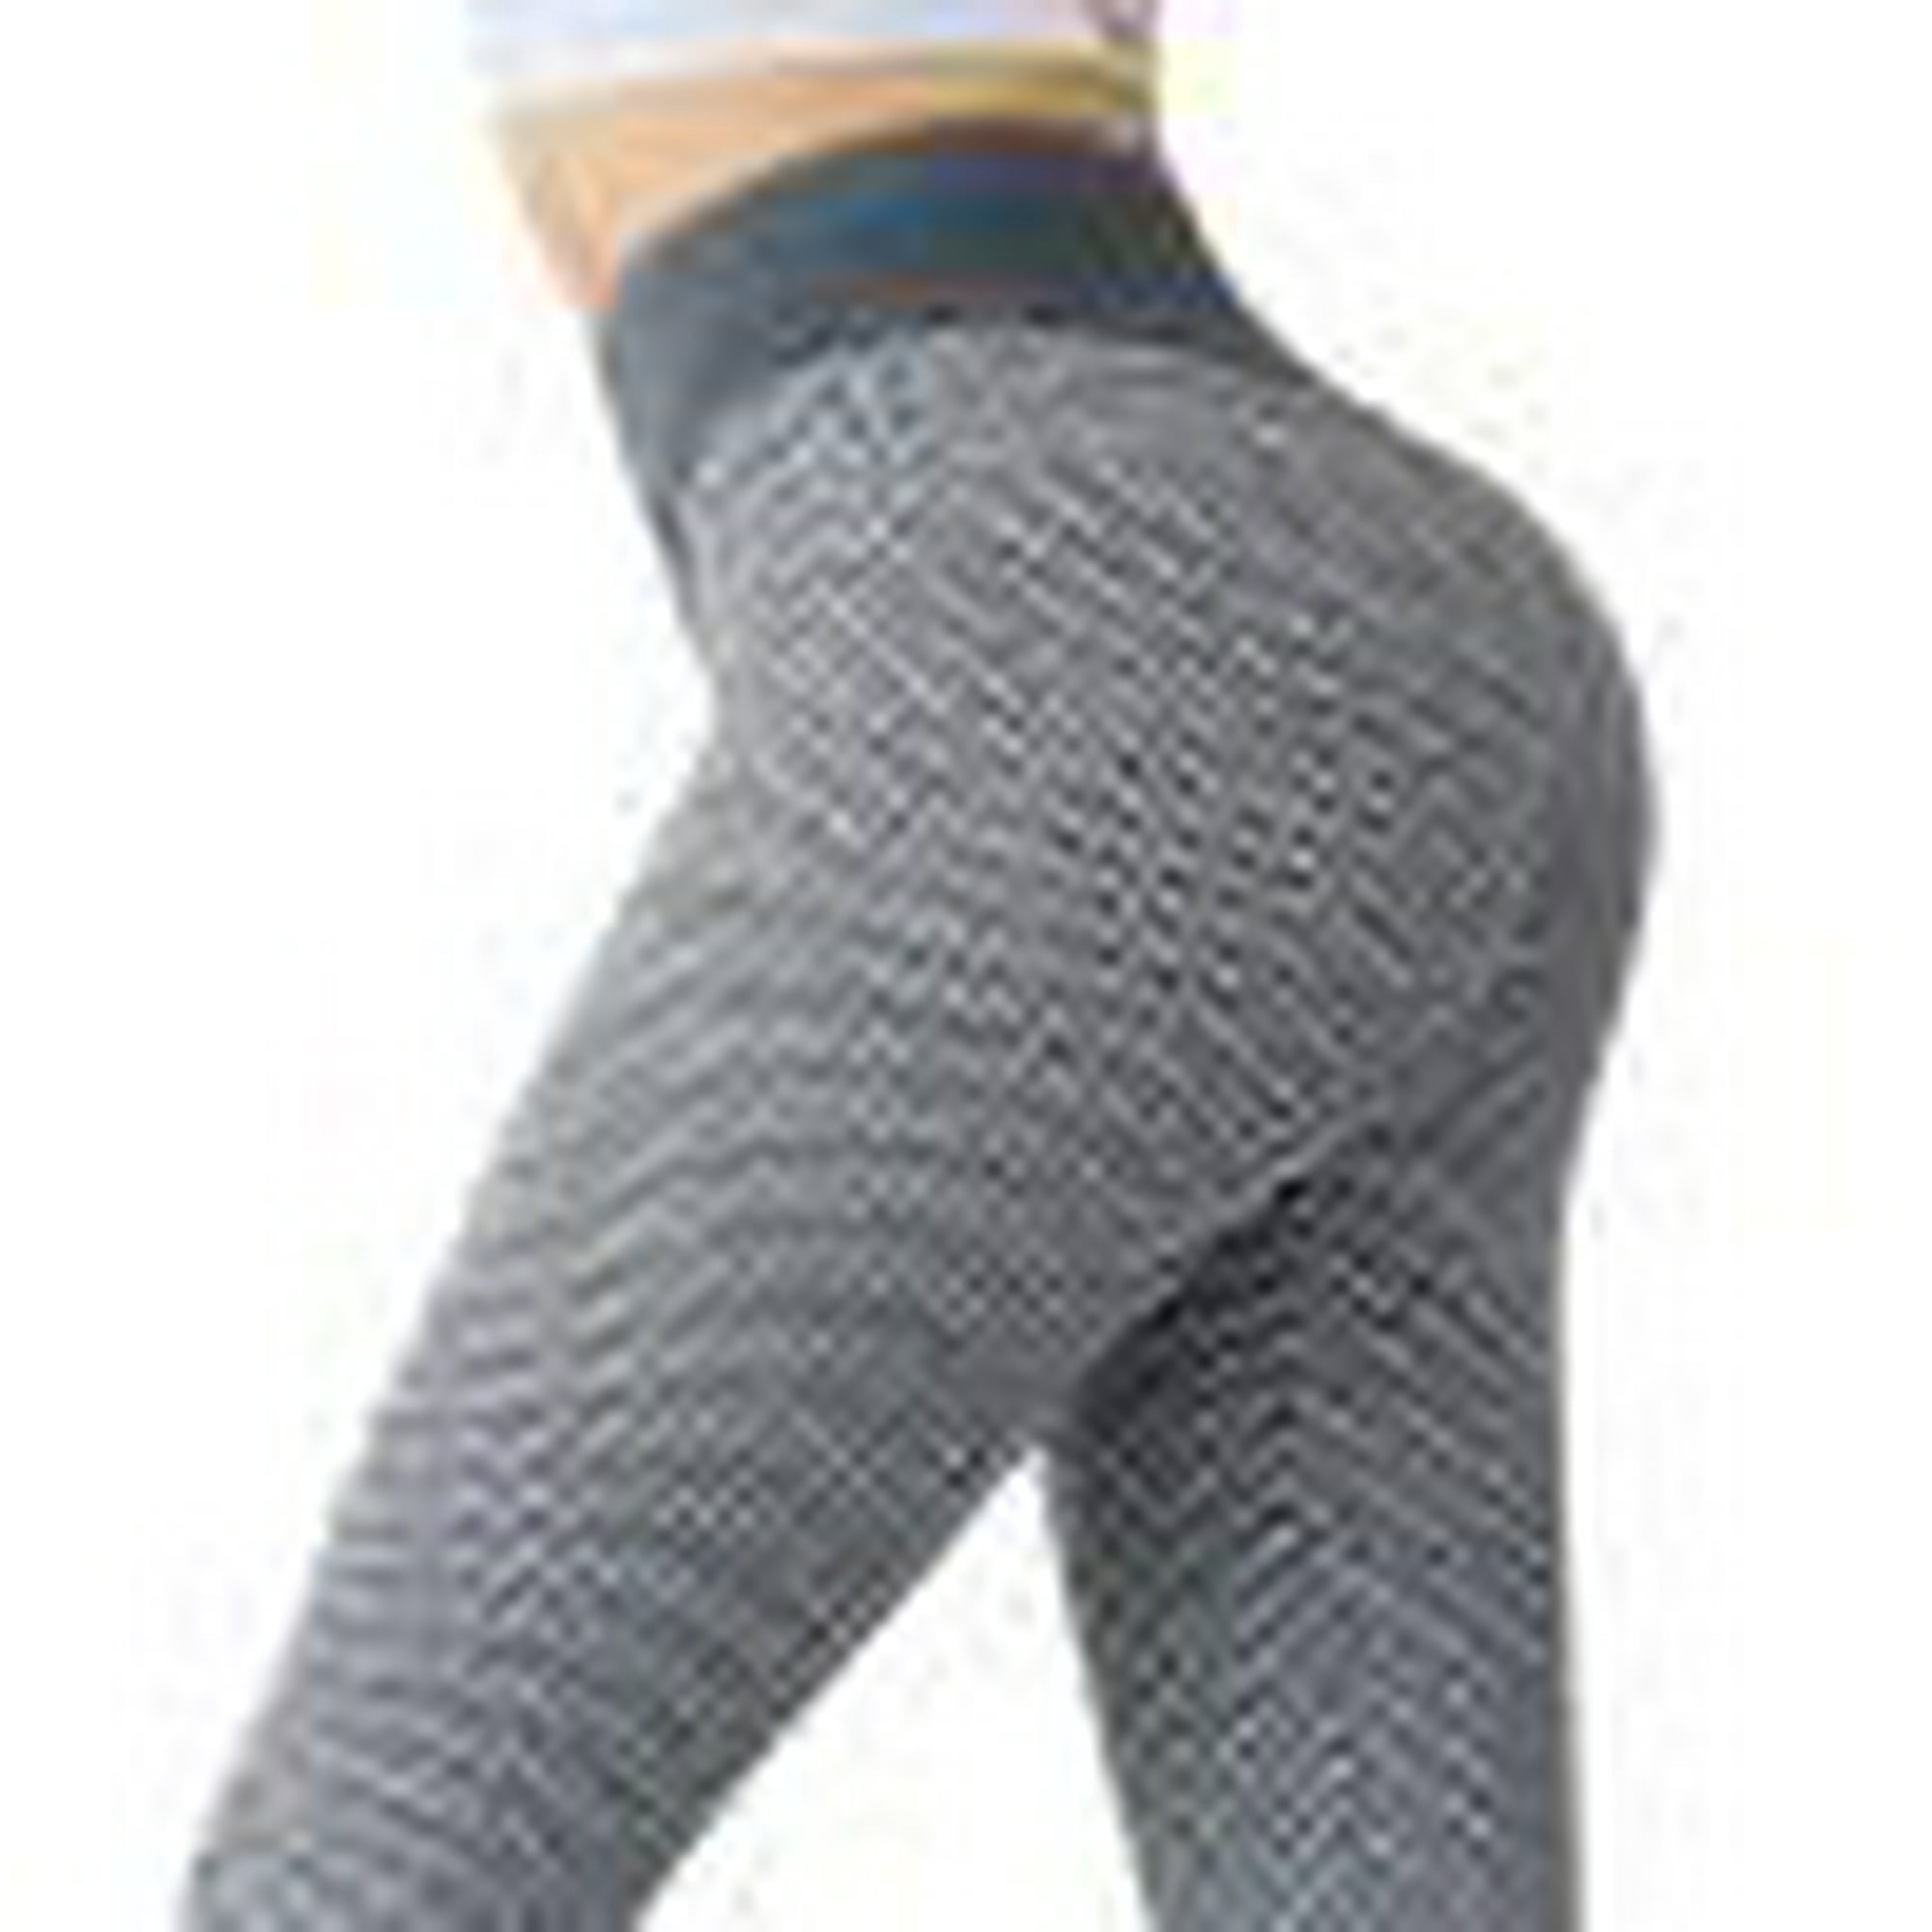 Pantalones de Yoga Pilates para Mujer Tallas S M L XL XXL en 5 colores